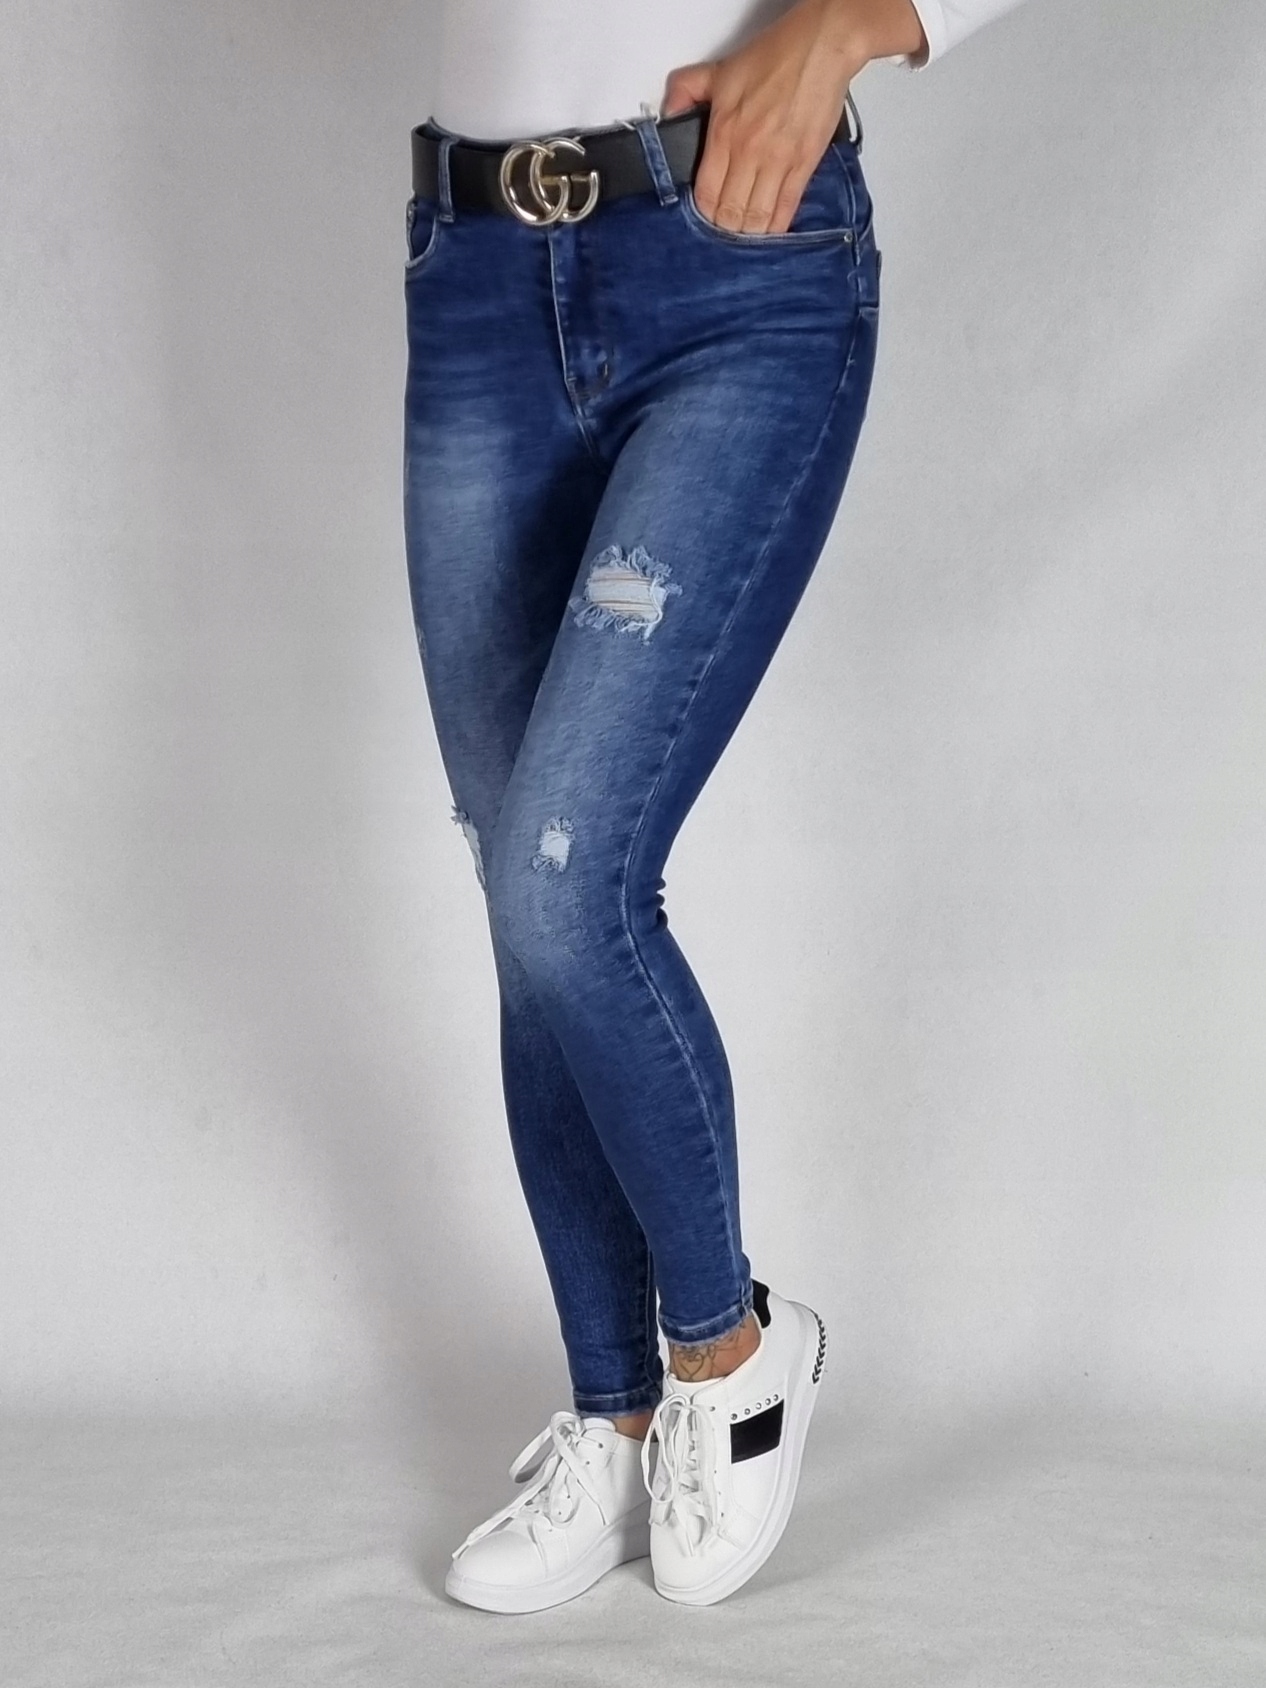 M. SARA джинсовые брюки с отверстиями размер 28 Gender Women